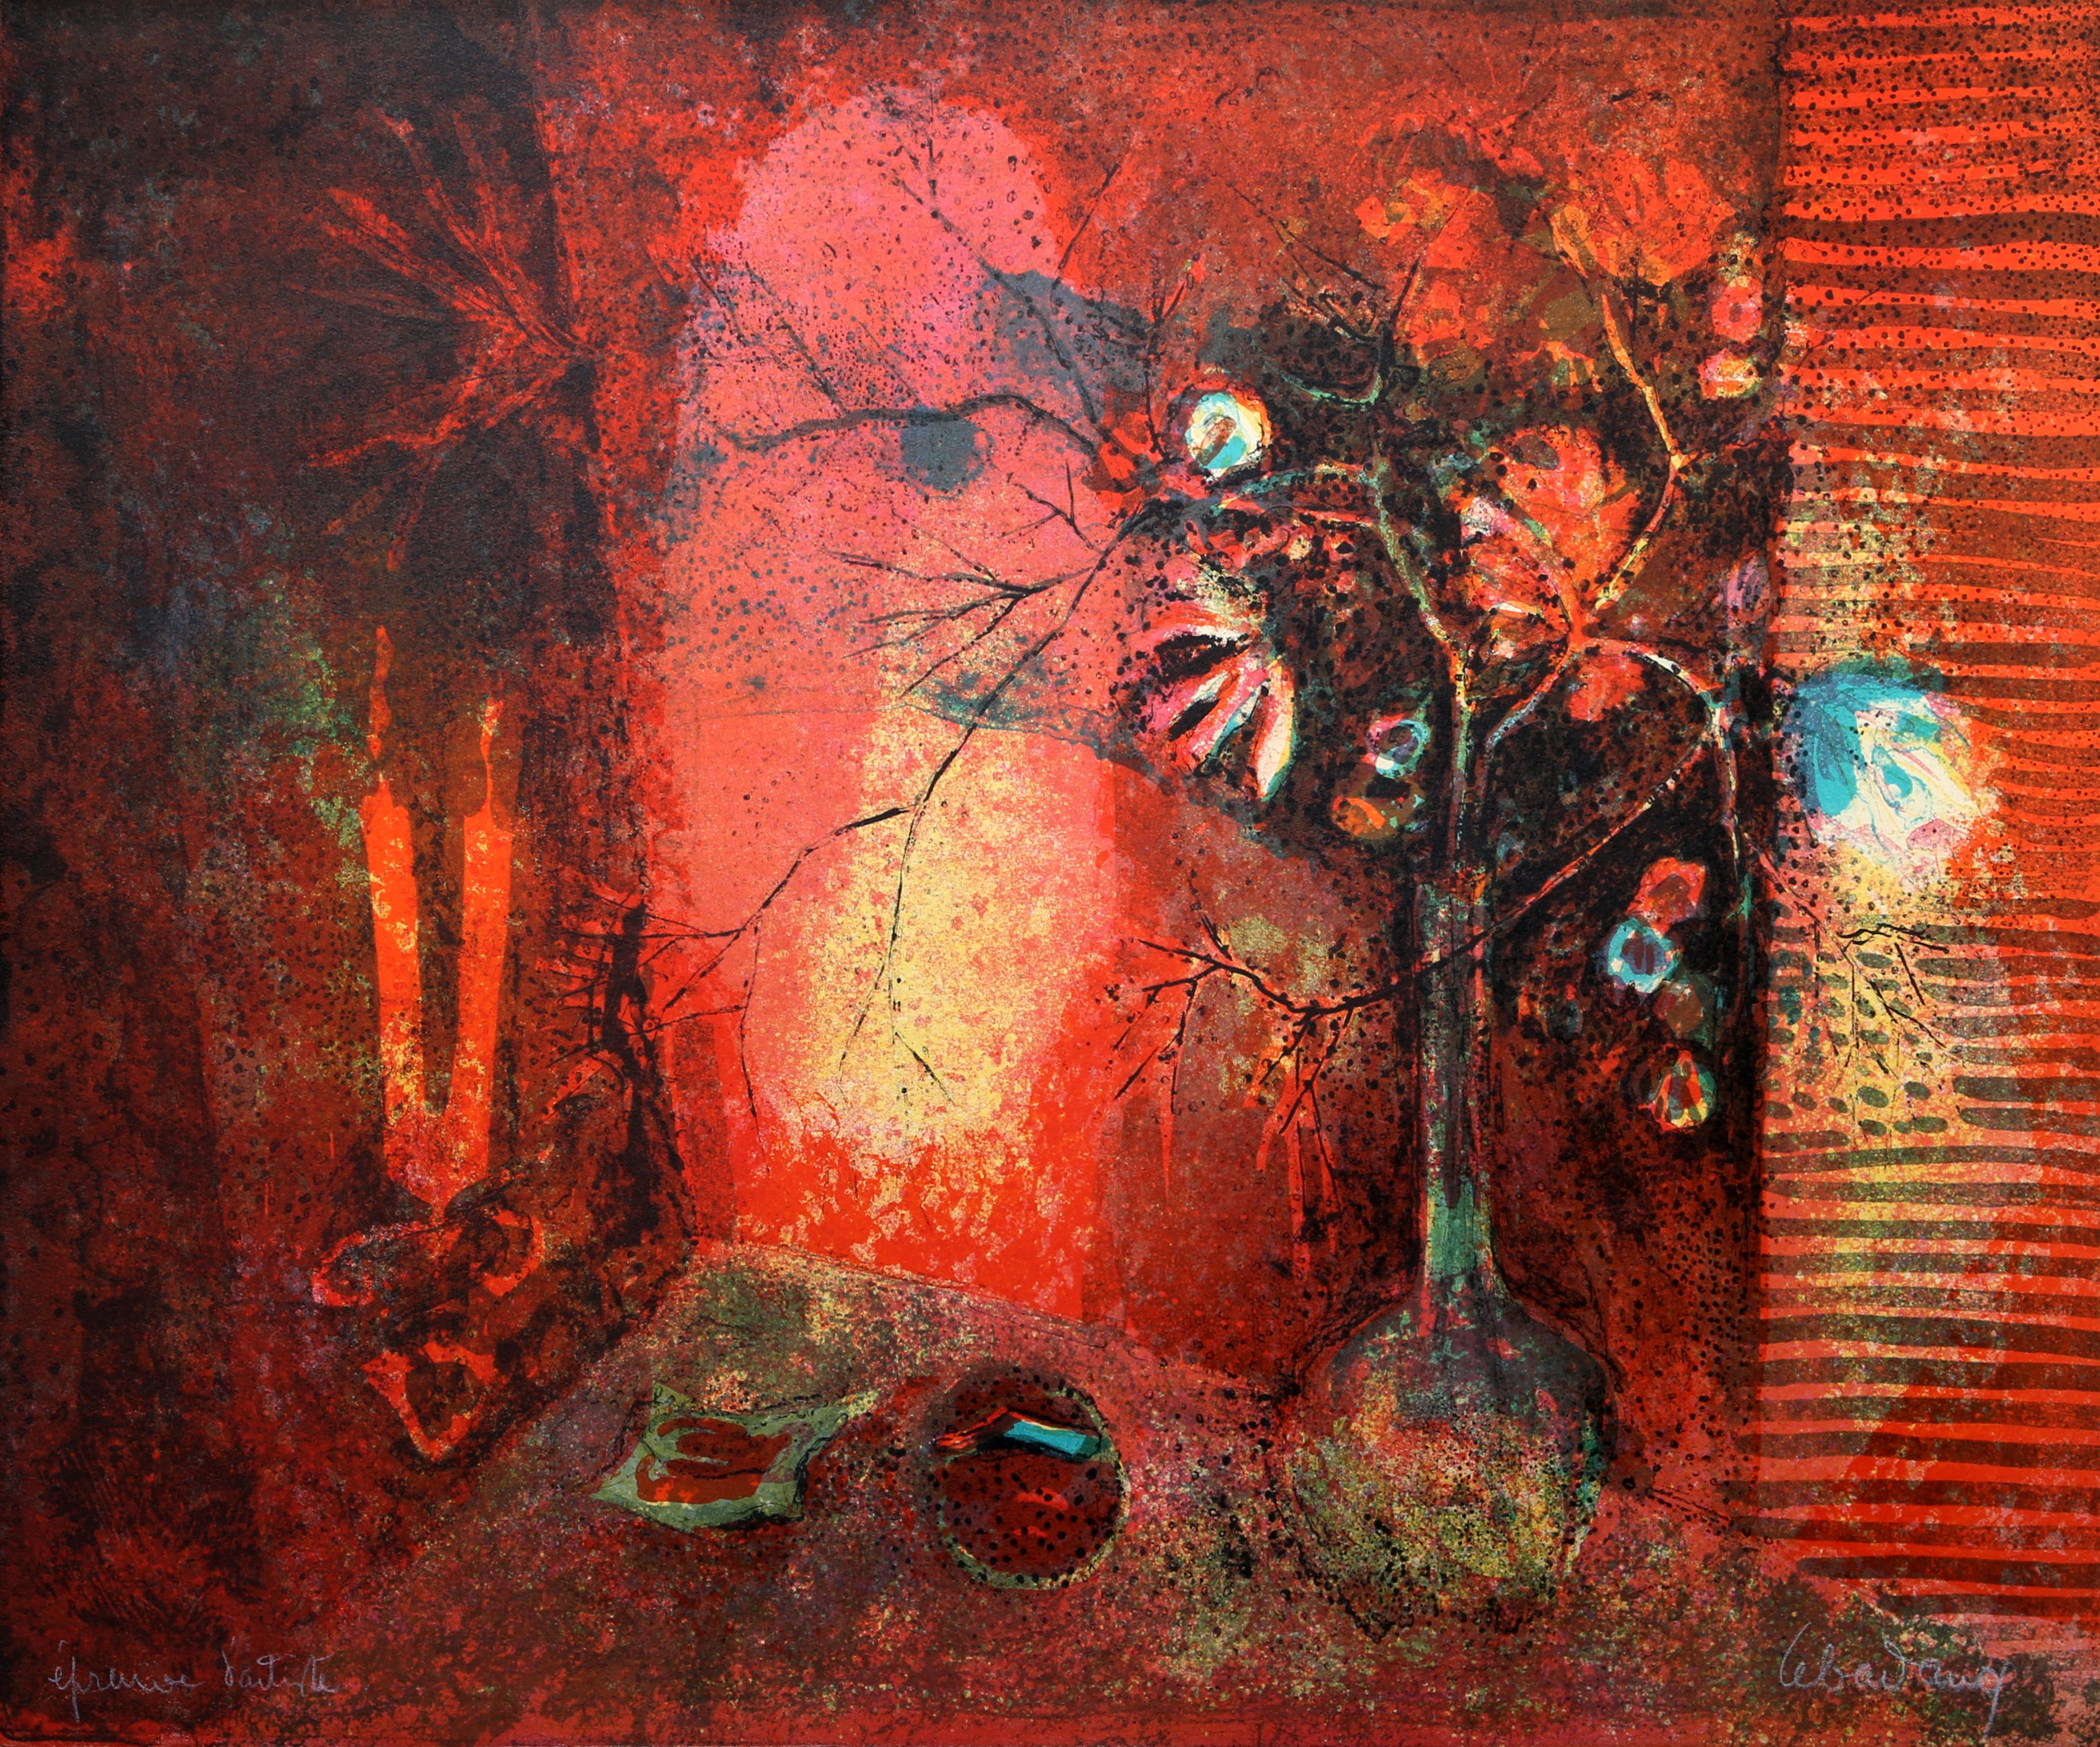 Stillleben in Rot, Lithographie von Lebadang